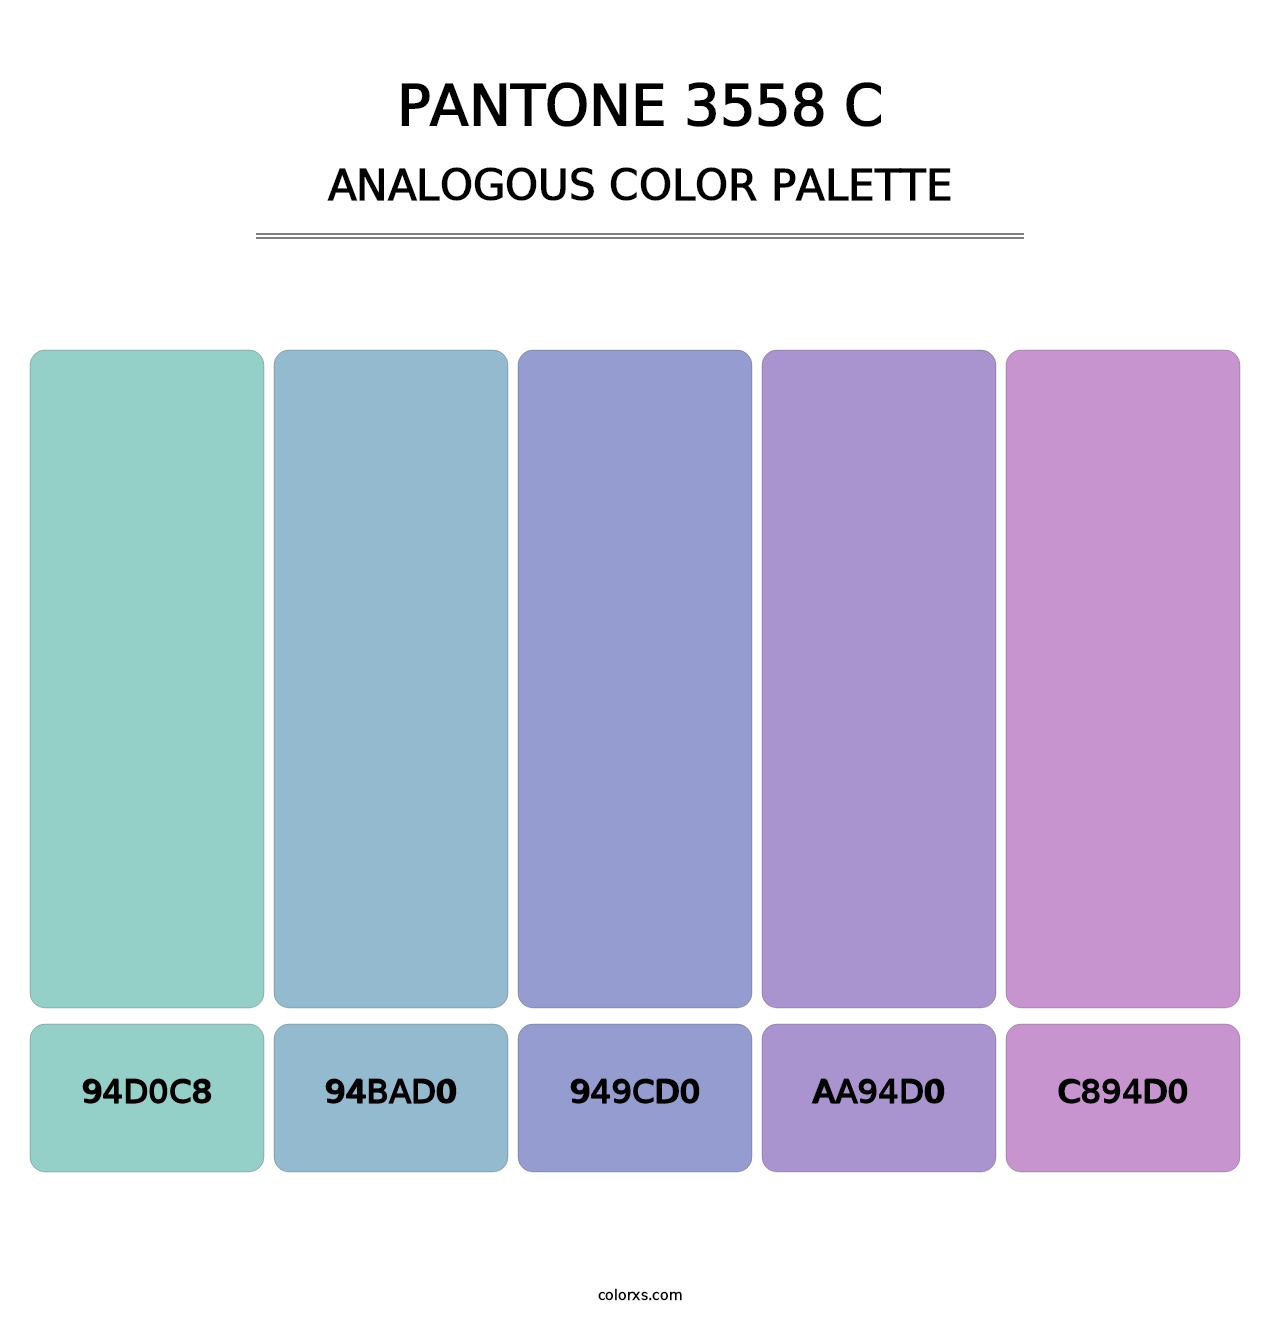 PANTONE 3558 C - Analogous Color Palette